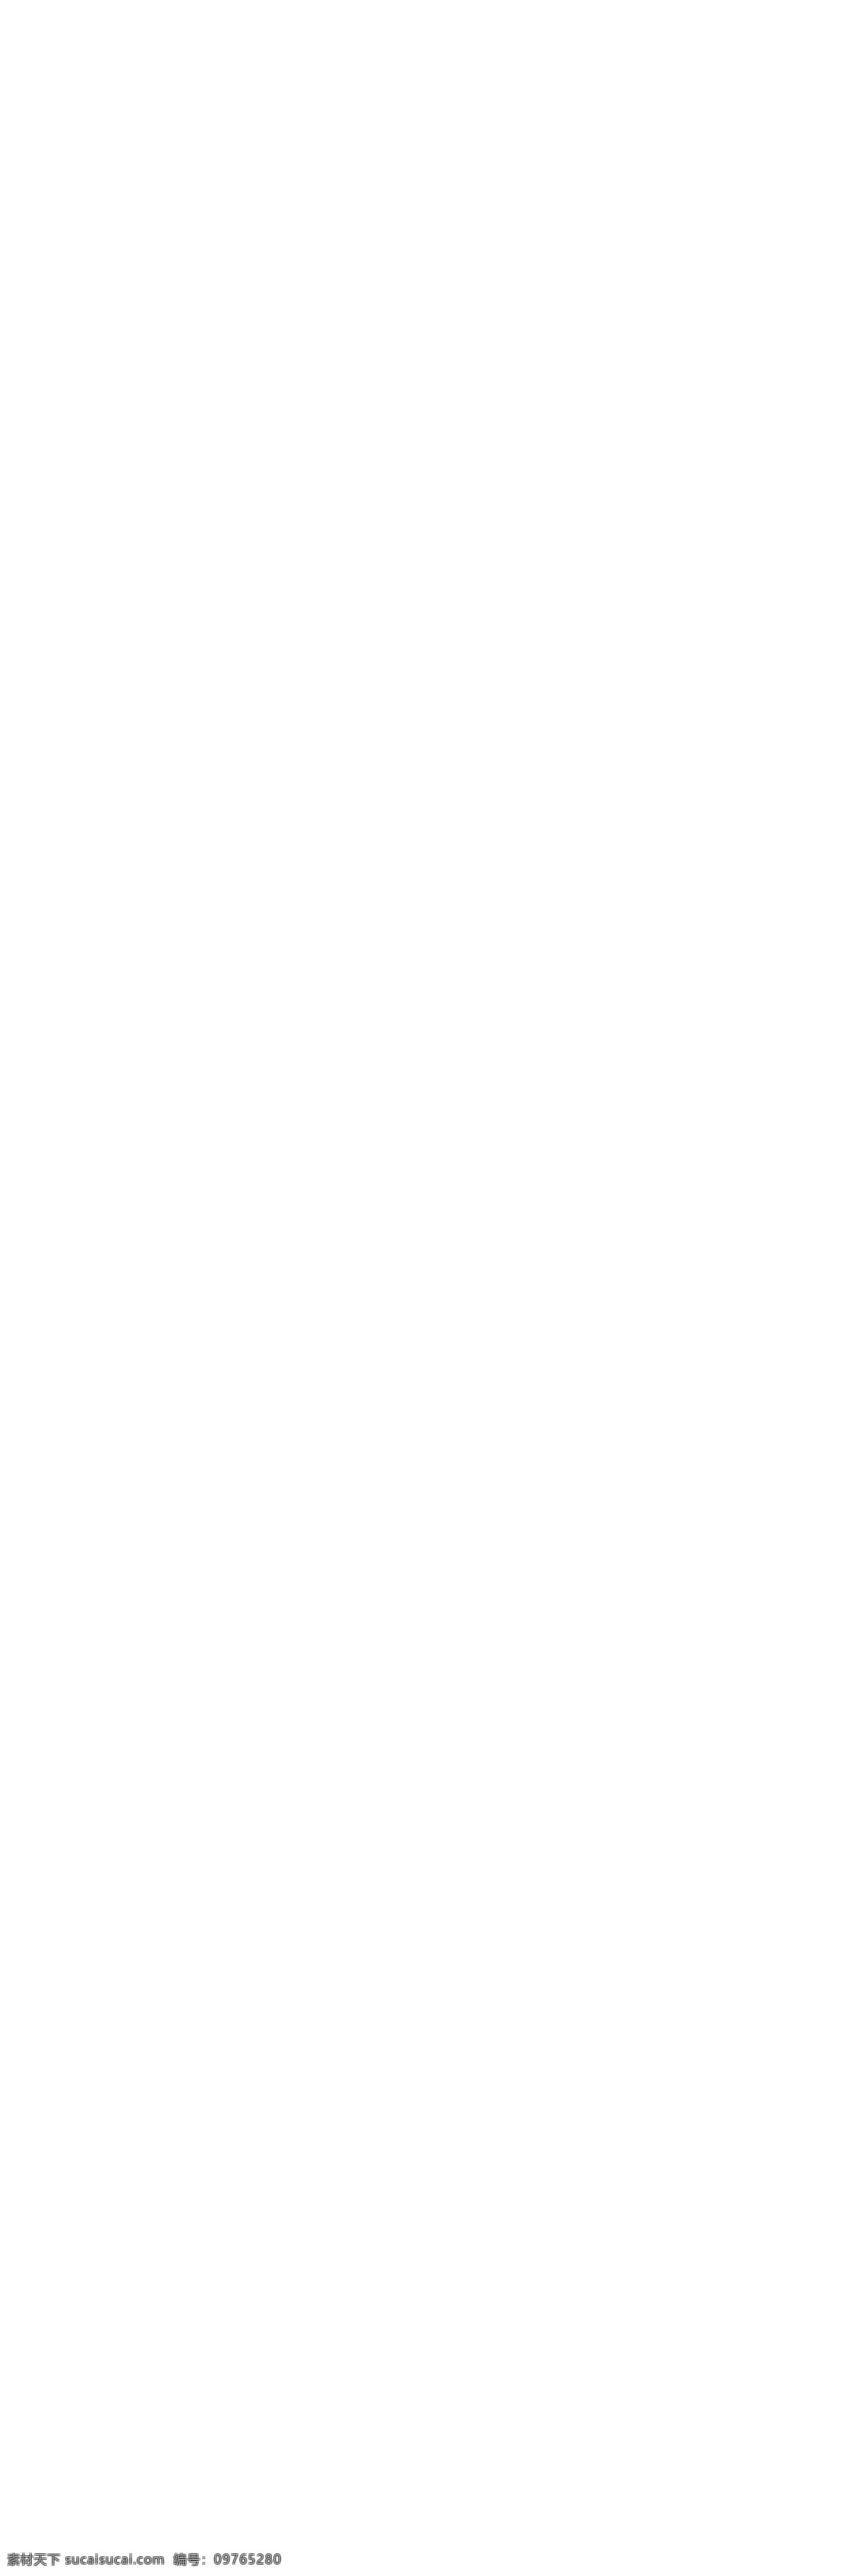 珠峰 冰川 x 展架 x展架 珠峰冰川写真 珠峰冰川海报 珠峰冰川 logo 喷绘 矿泉水 kt板 广告制作